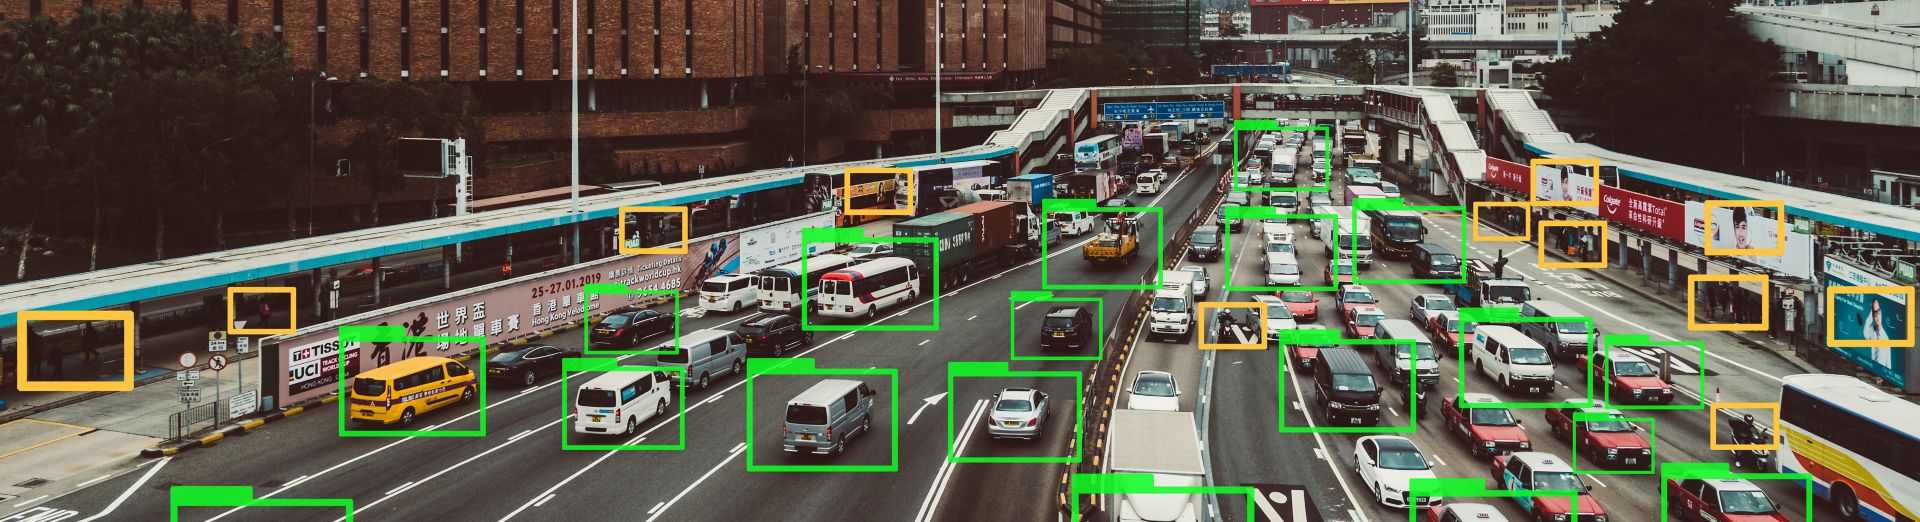 Fahrzeuge auf einer Autobahn, die mit maschinellem Lernen verfolgt werden